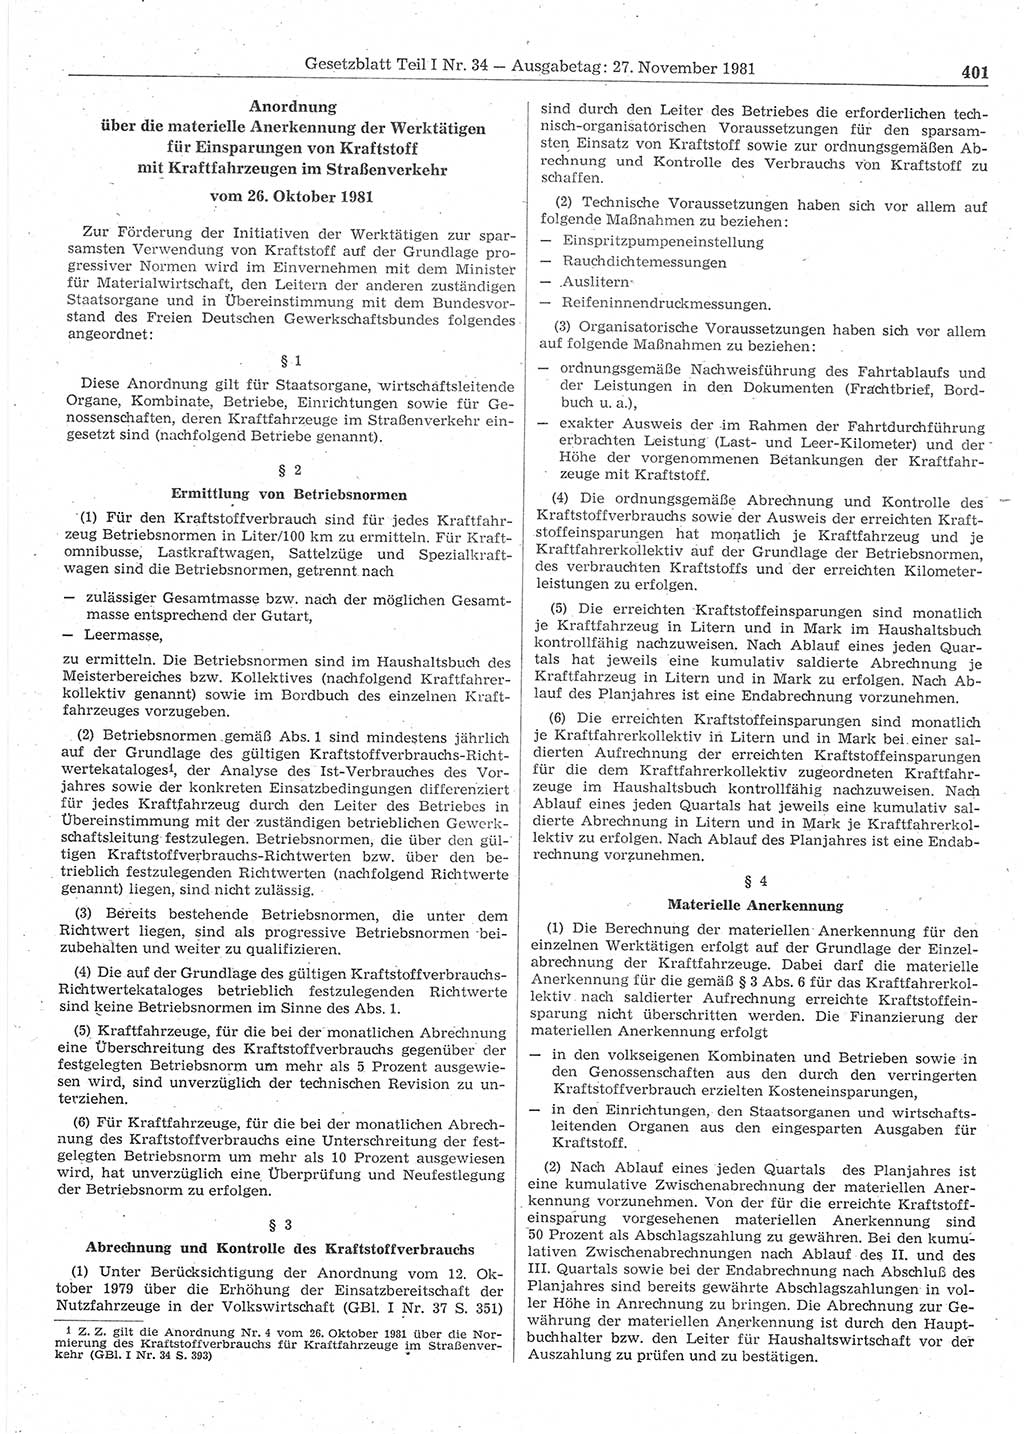 Gesetzblatt (GBl.) der Deutschen Demokratischen Republik (DDR) Teil Ⅰ 1981, Seite 401 (GBl. DDR Ⅰ 1981, S. 401)